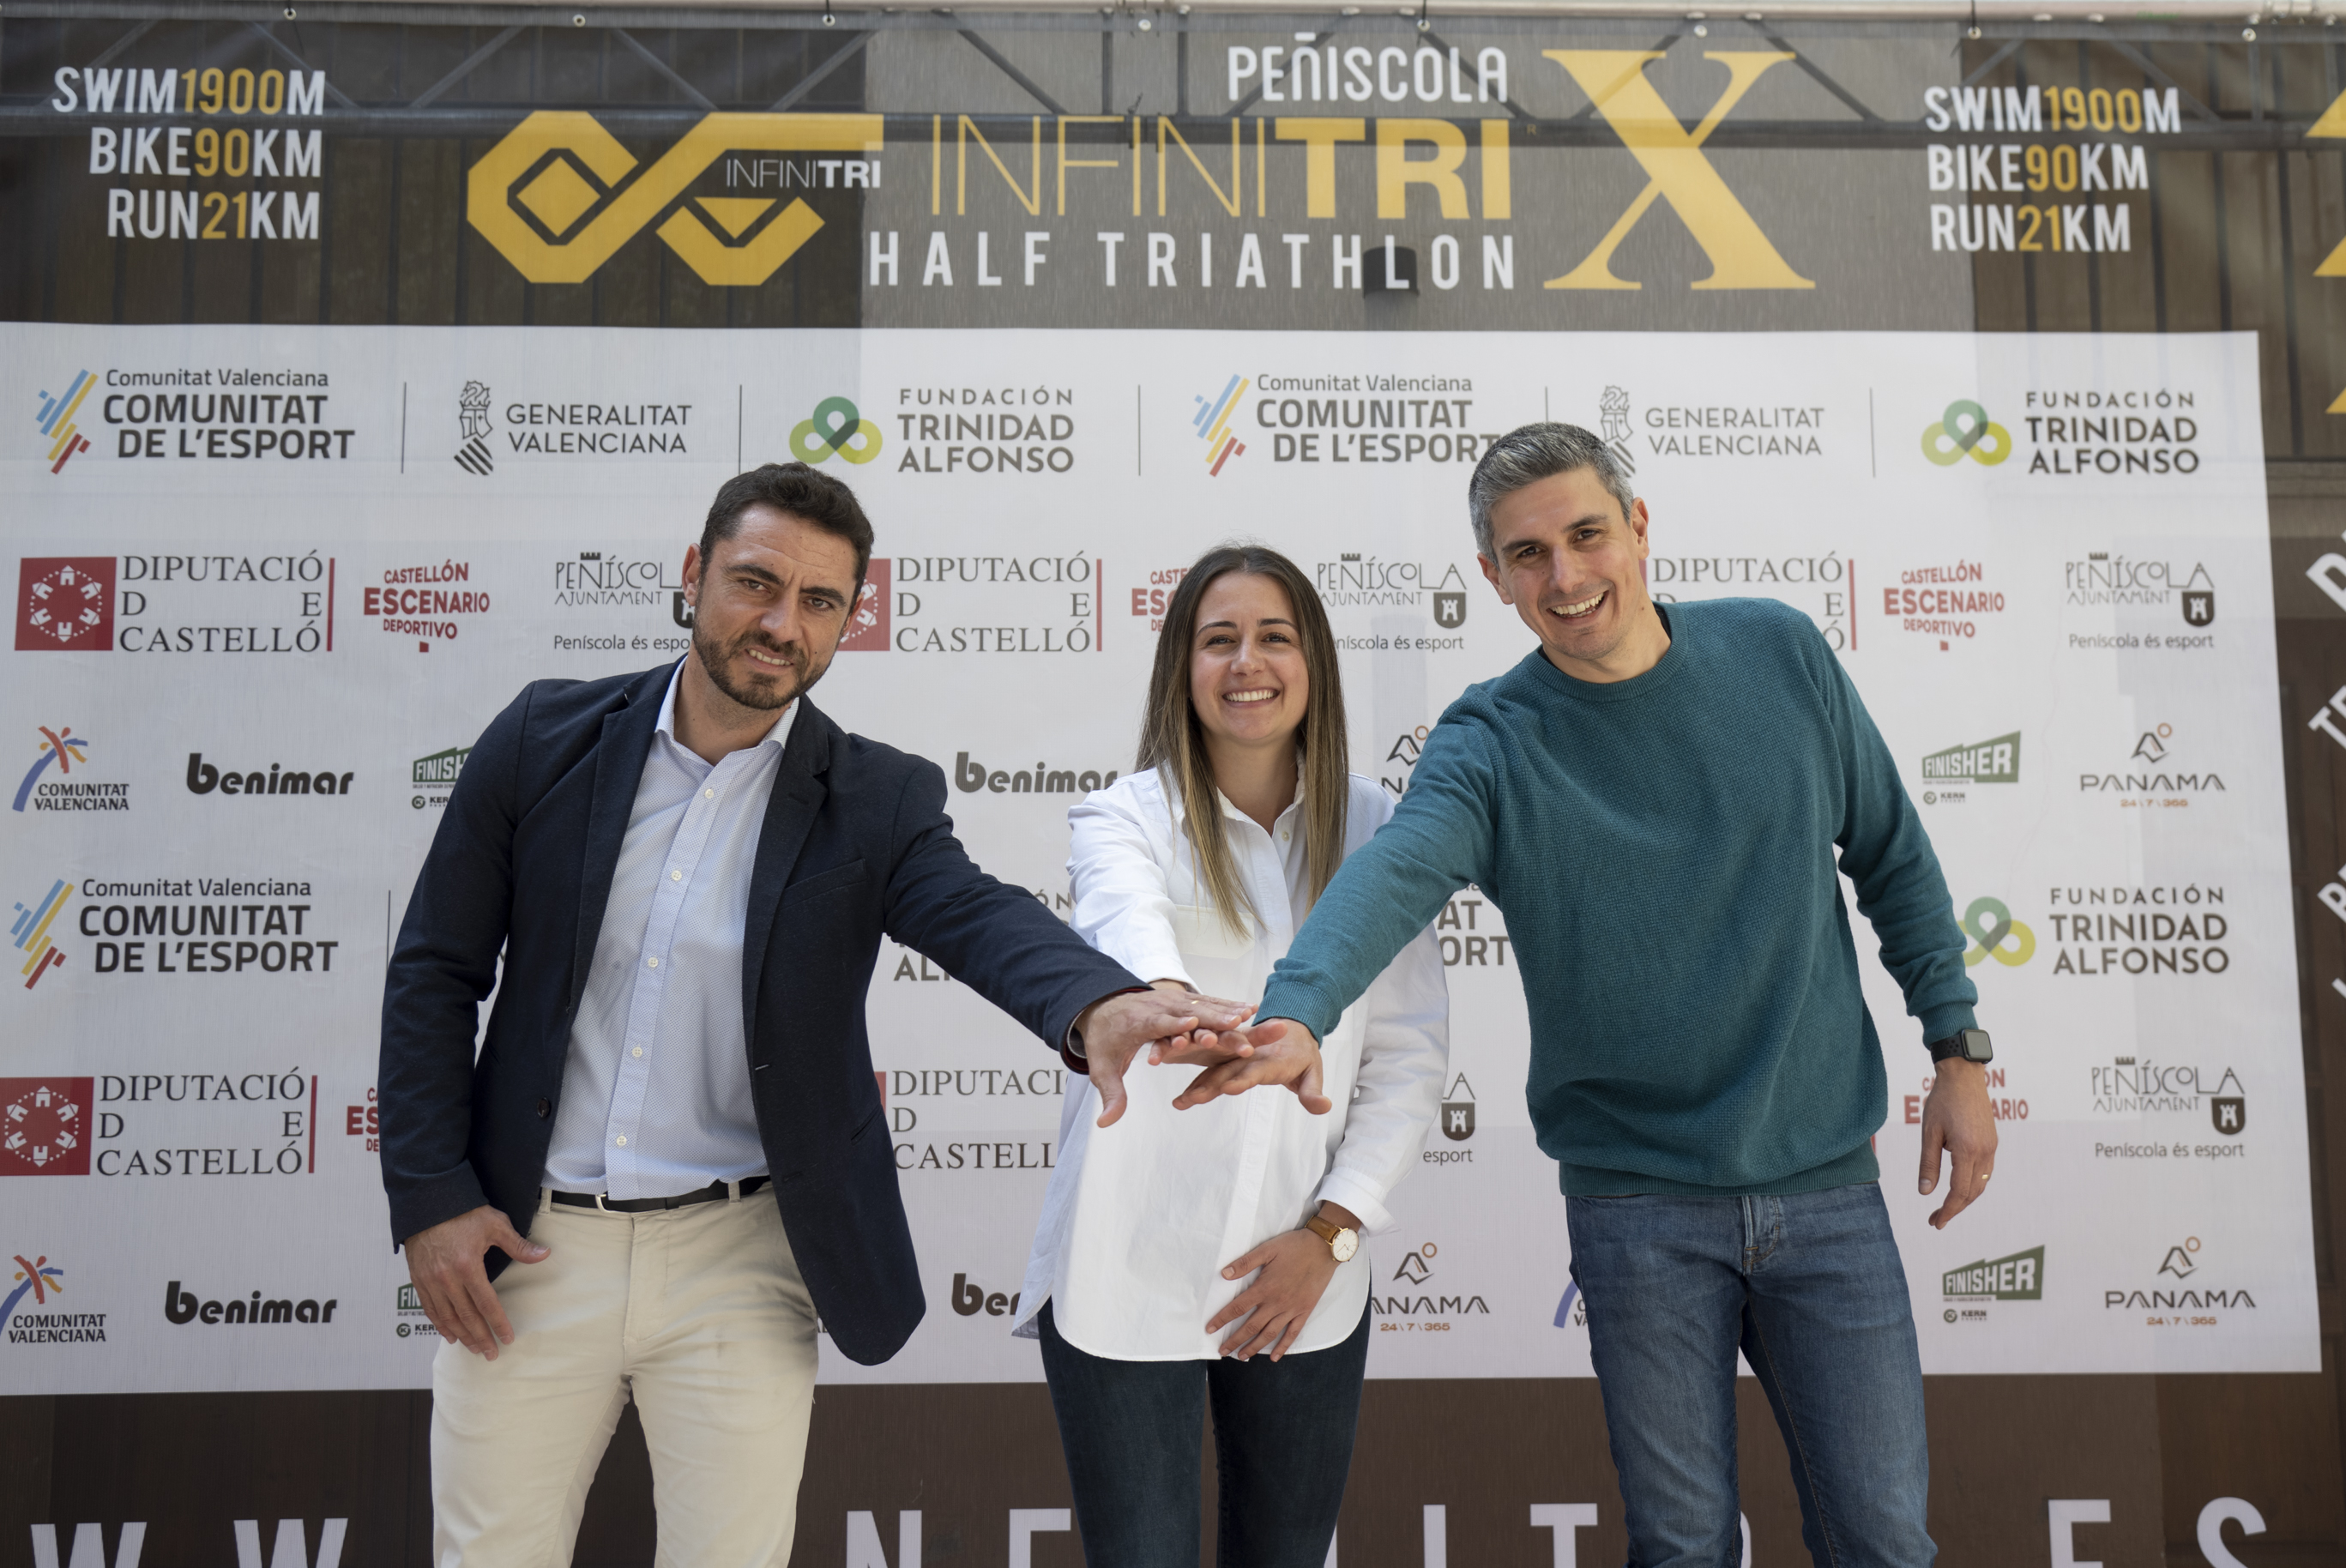 La Diputació presenta l'Infinitri Half Triathlon Peníscola amb una xifra rècord de participació de dones